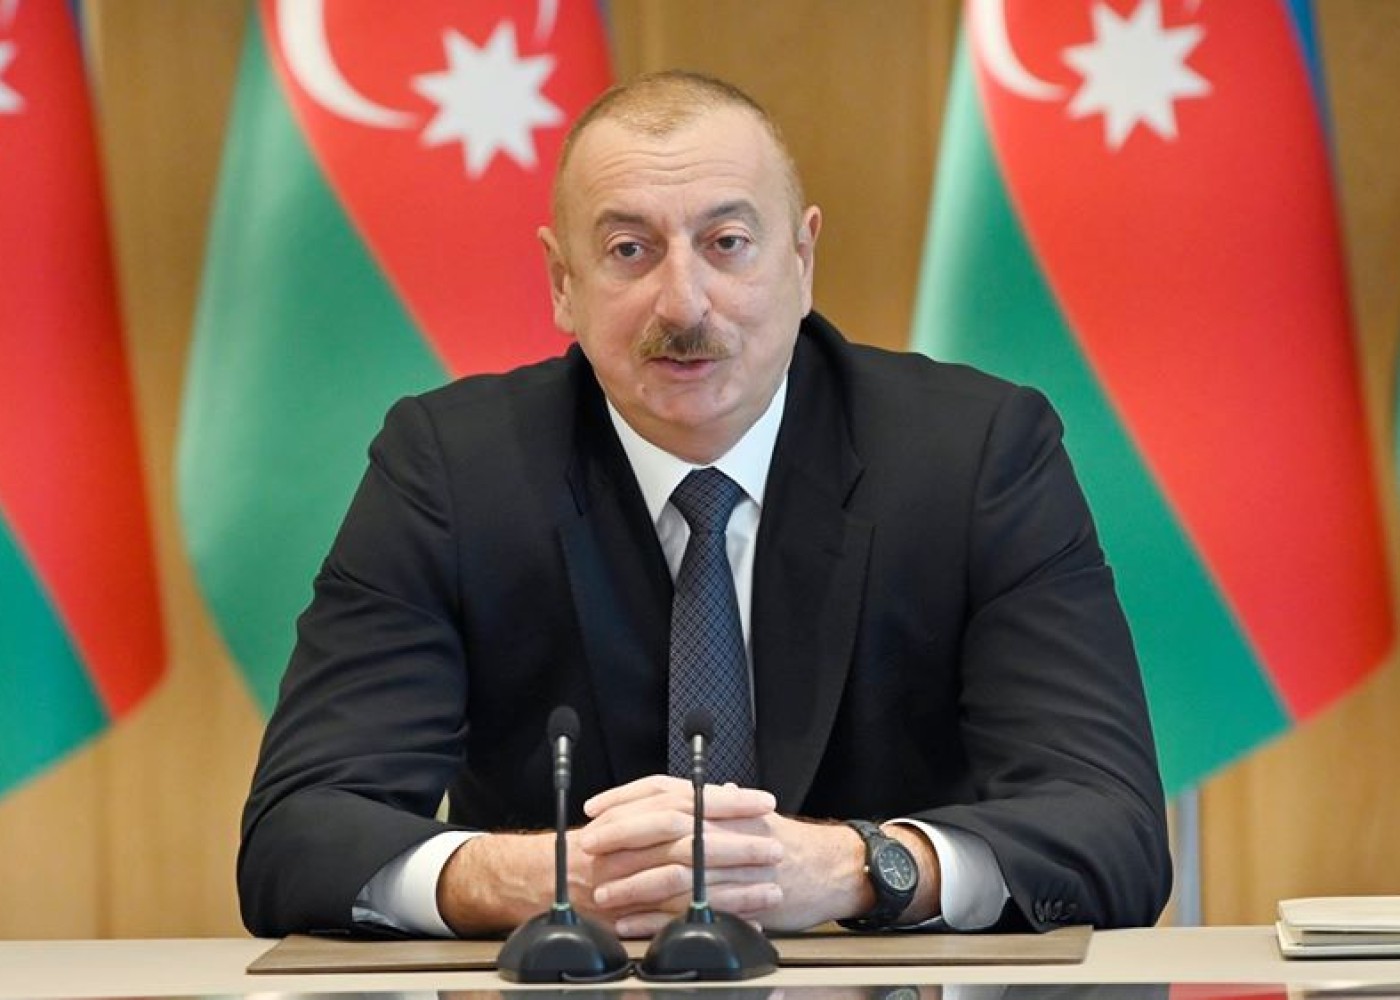 "Azərbaycan ərazisində separatçılara yer yoxdur və bundan sonra da olmayacaq" - Prezident